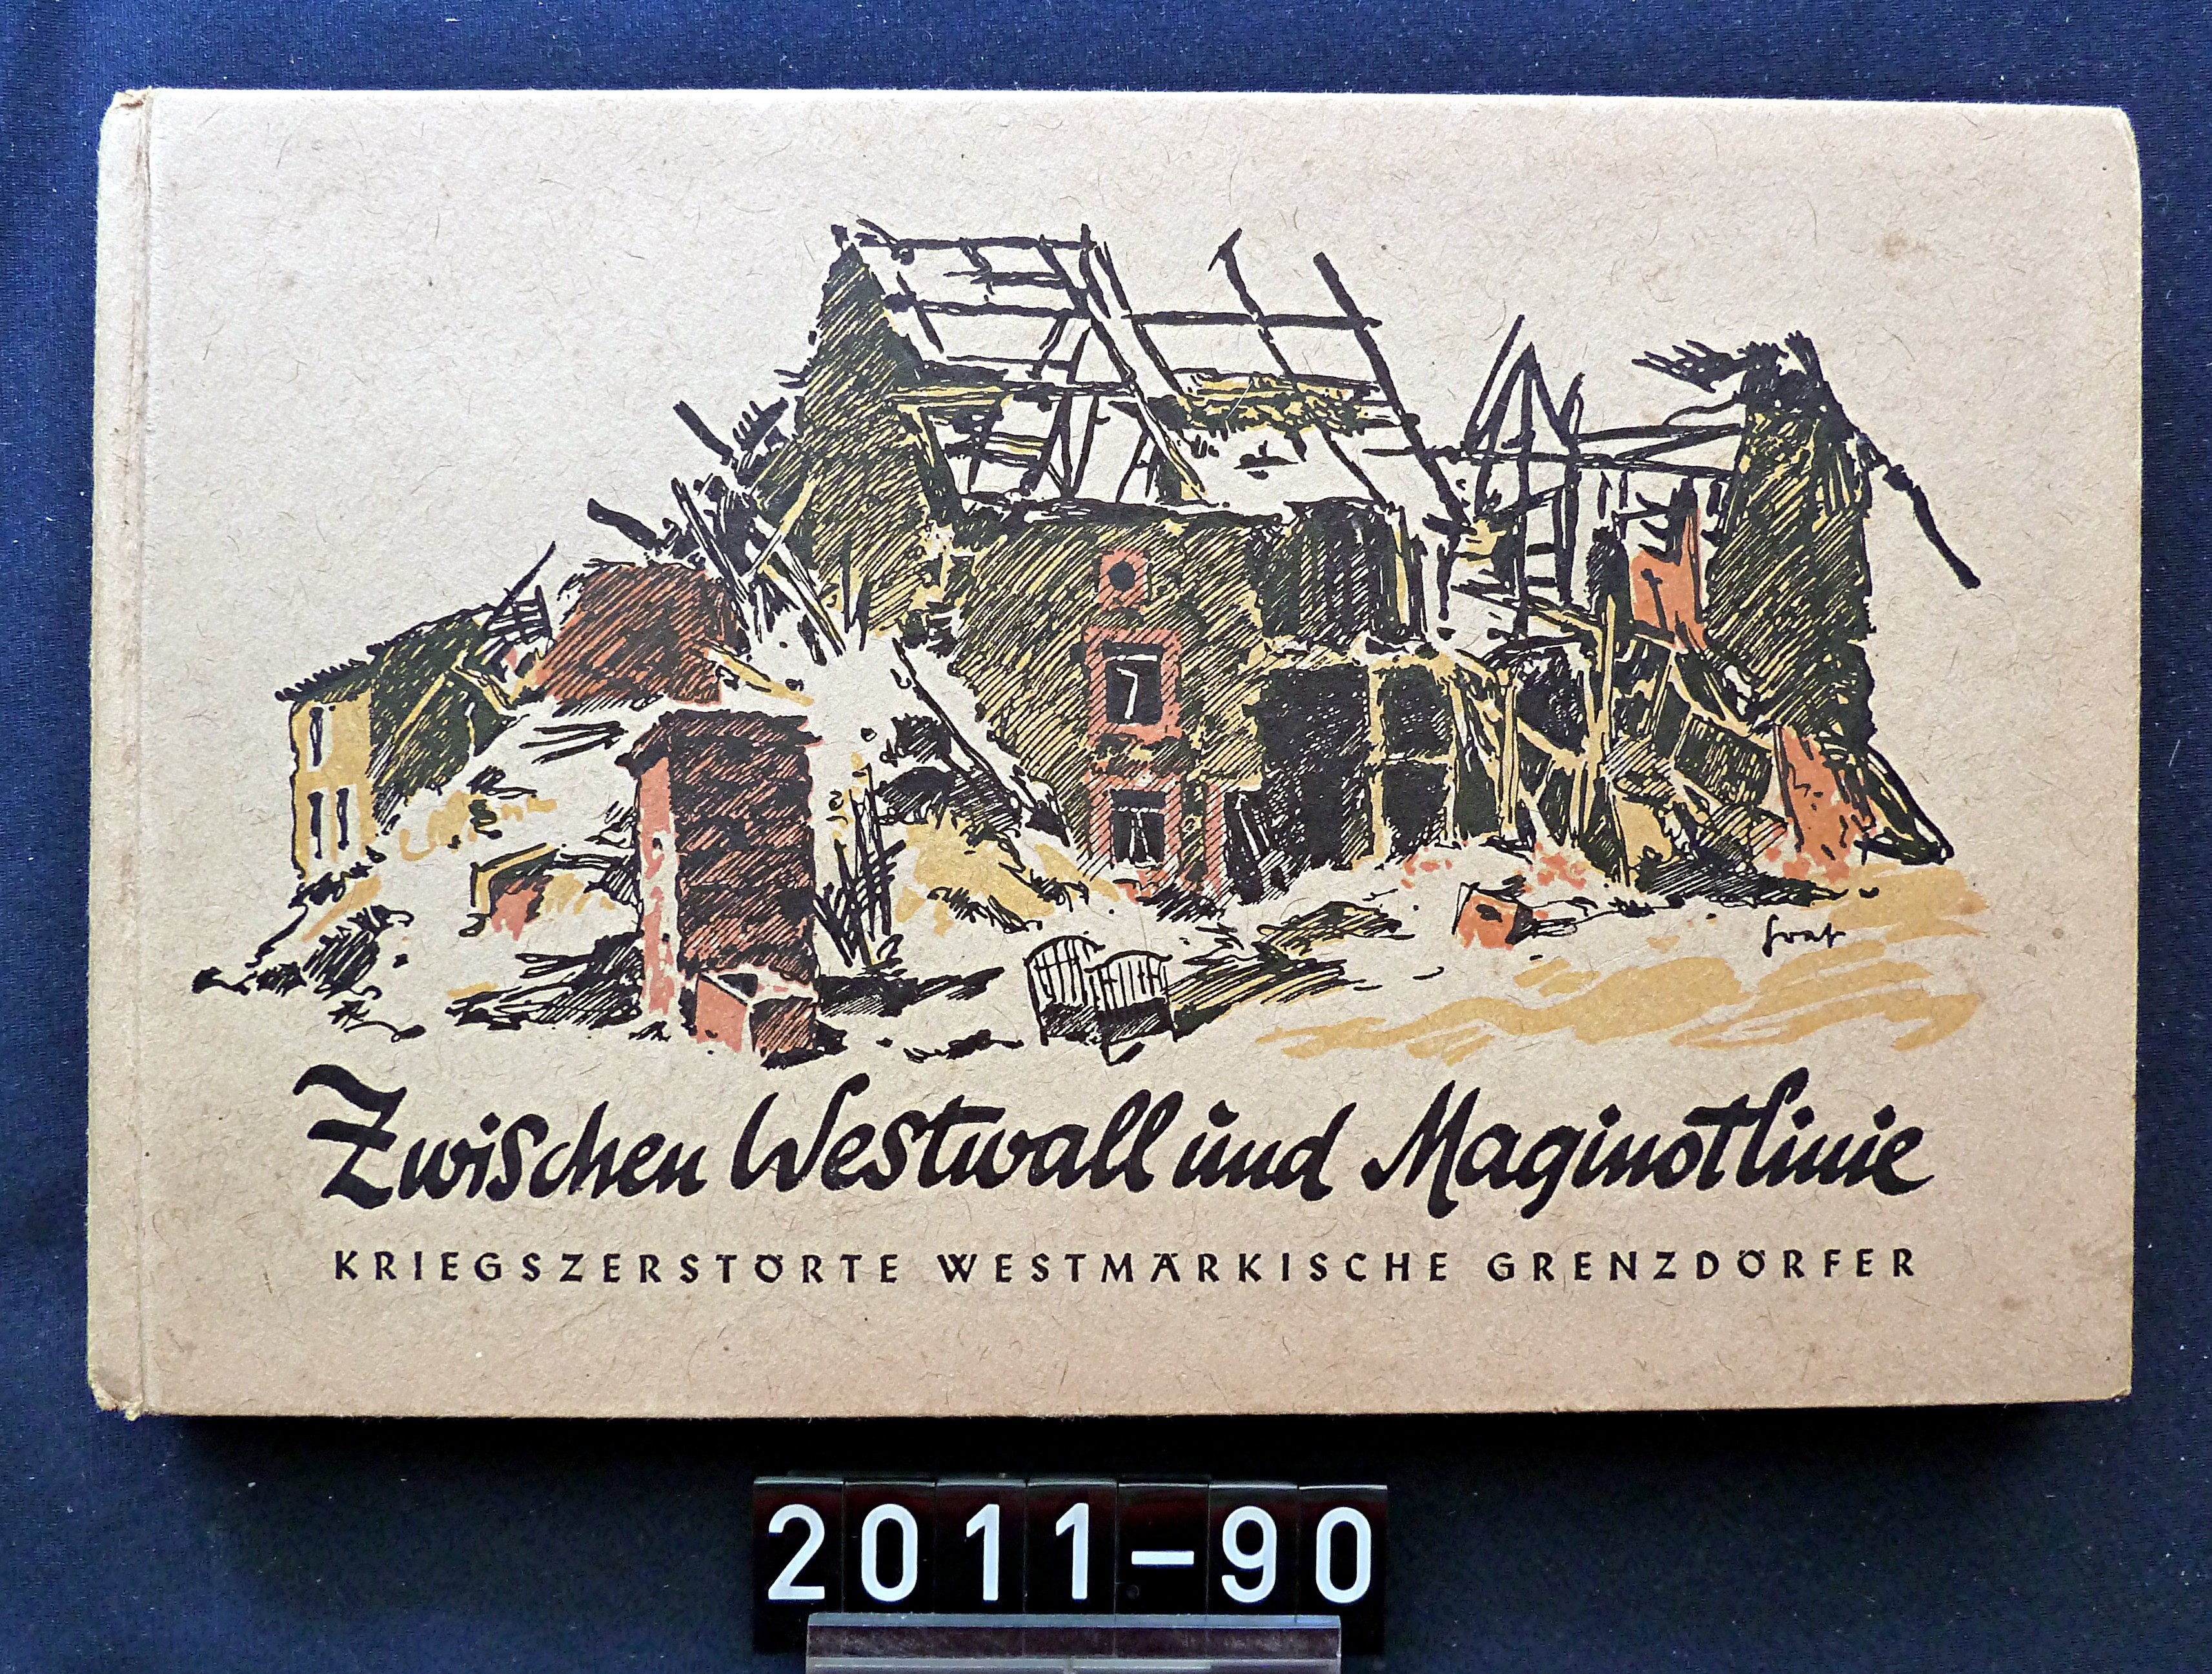 Buch; "Zwischen Westwall und Maginotlinie"; Bilder und Beschreibungen von kriegszerstörten Grenzdörfern; 1942 (Stadtmuseum Bad Dürkheim, Museumsgesellschaft Bad Dürkheim e.V. CC BY-NC-SA)